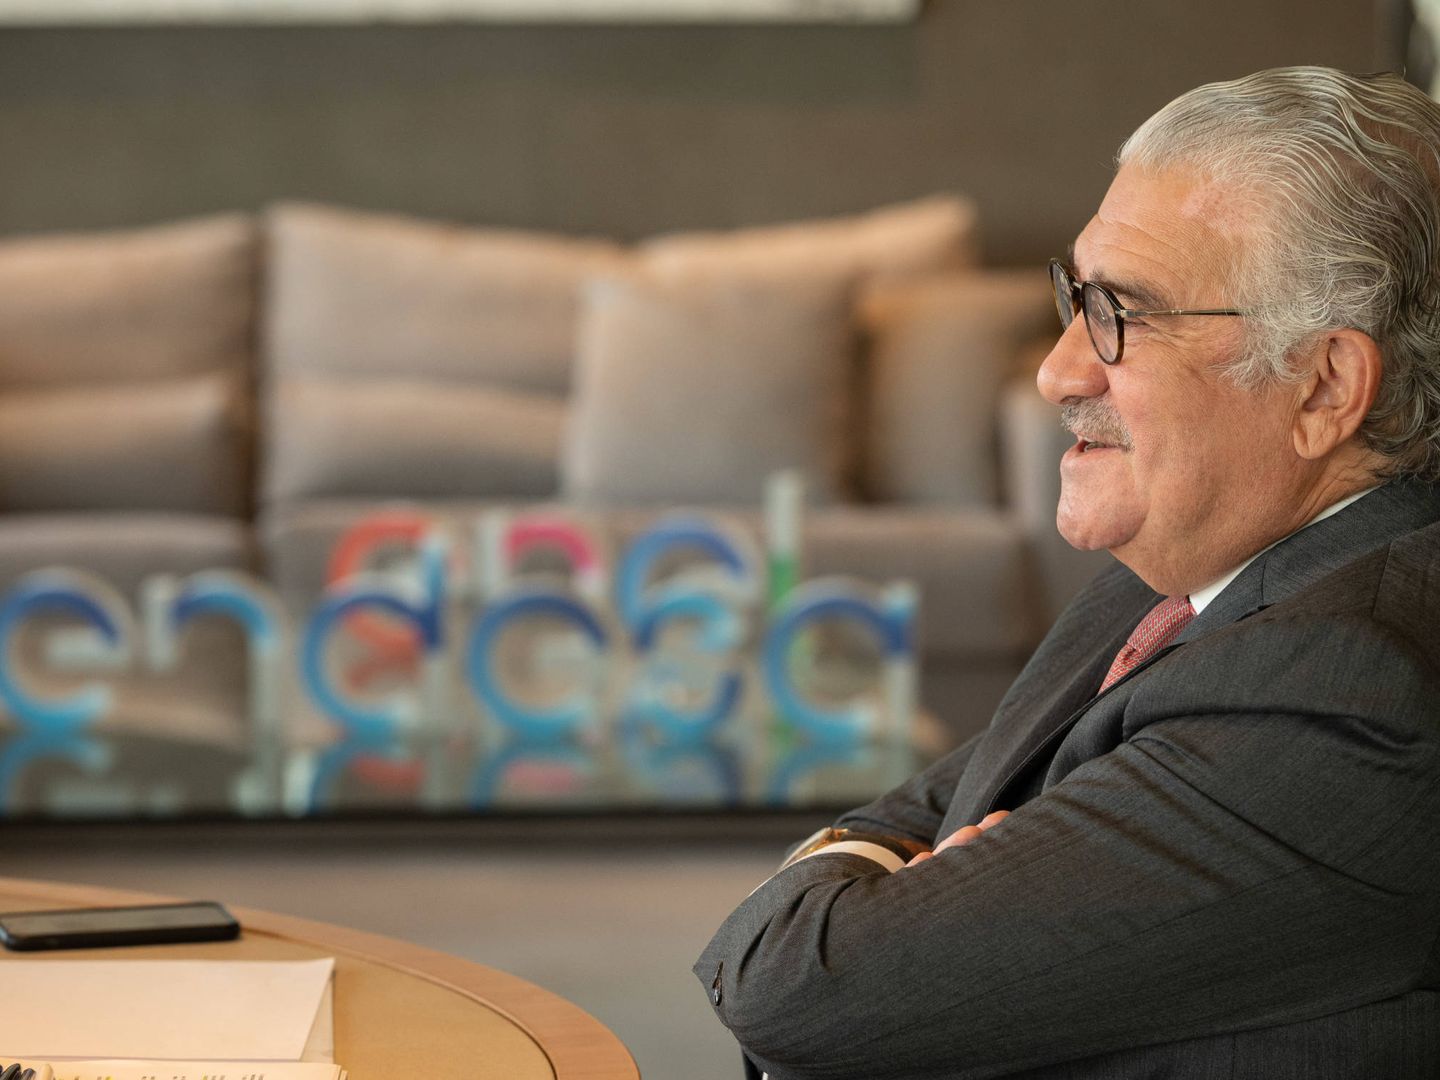 Entrevista a José Bogas en su despacho. Al fondo, una mesa con los logos de Endesa y Enel. (Foto cedida por Endesa)